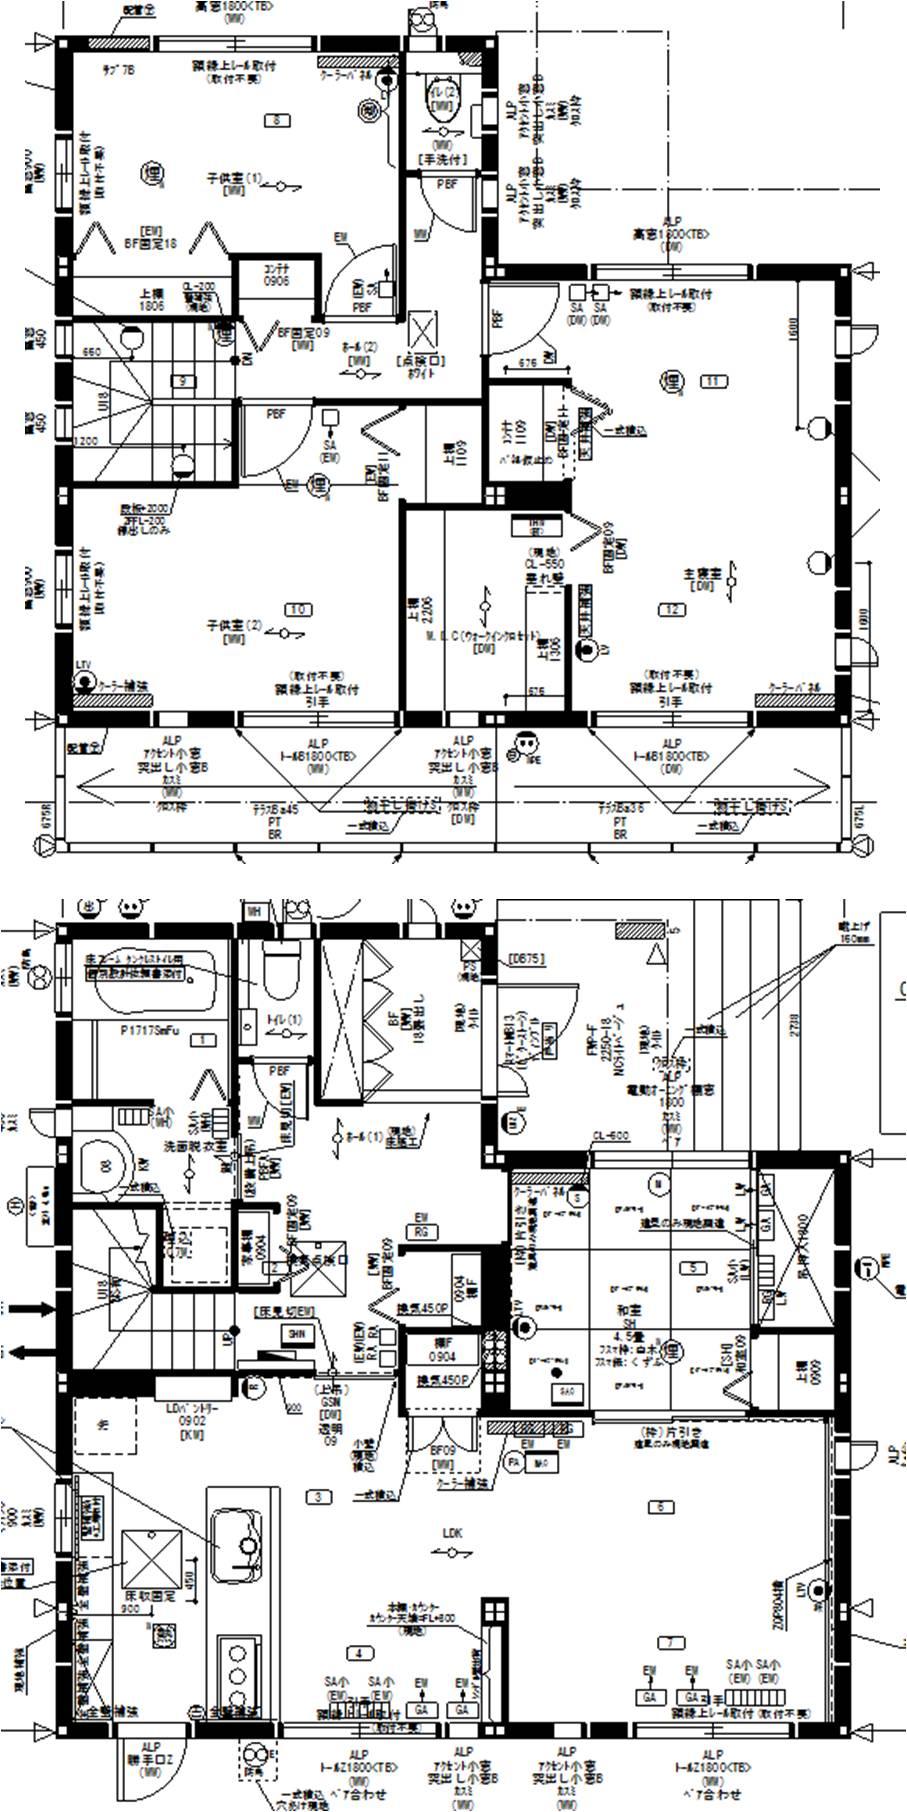 Floor plan. (A Building), Price 39,980,000 yen, 4LDK, Land area 210.22 sq m , Building area 115.89 sq m